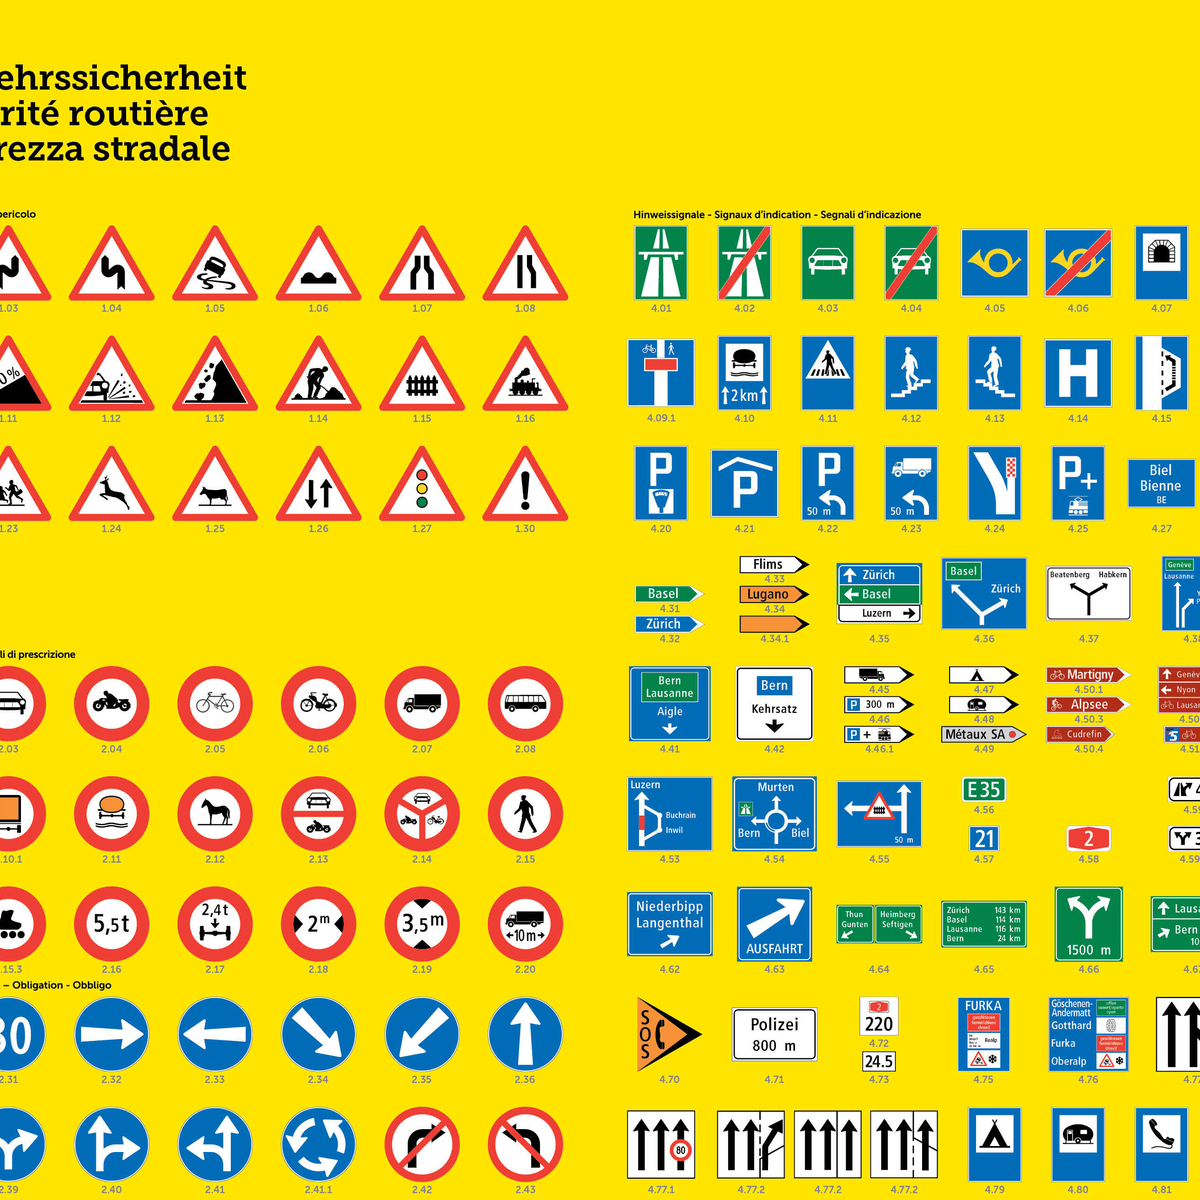 panneaux routiers suisse anti aging